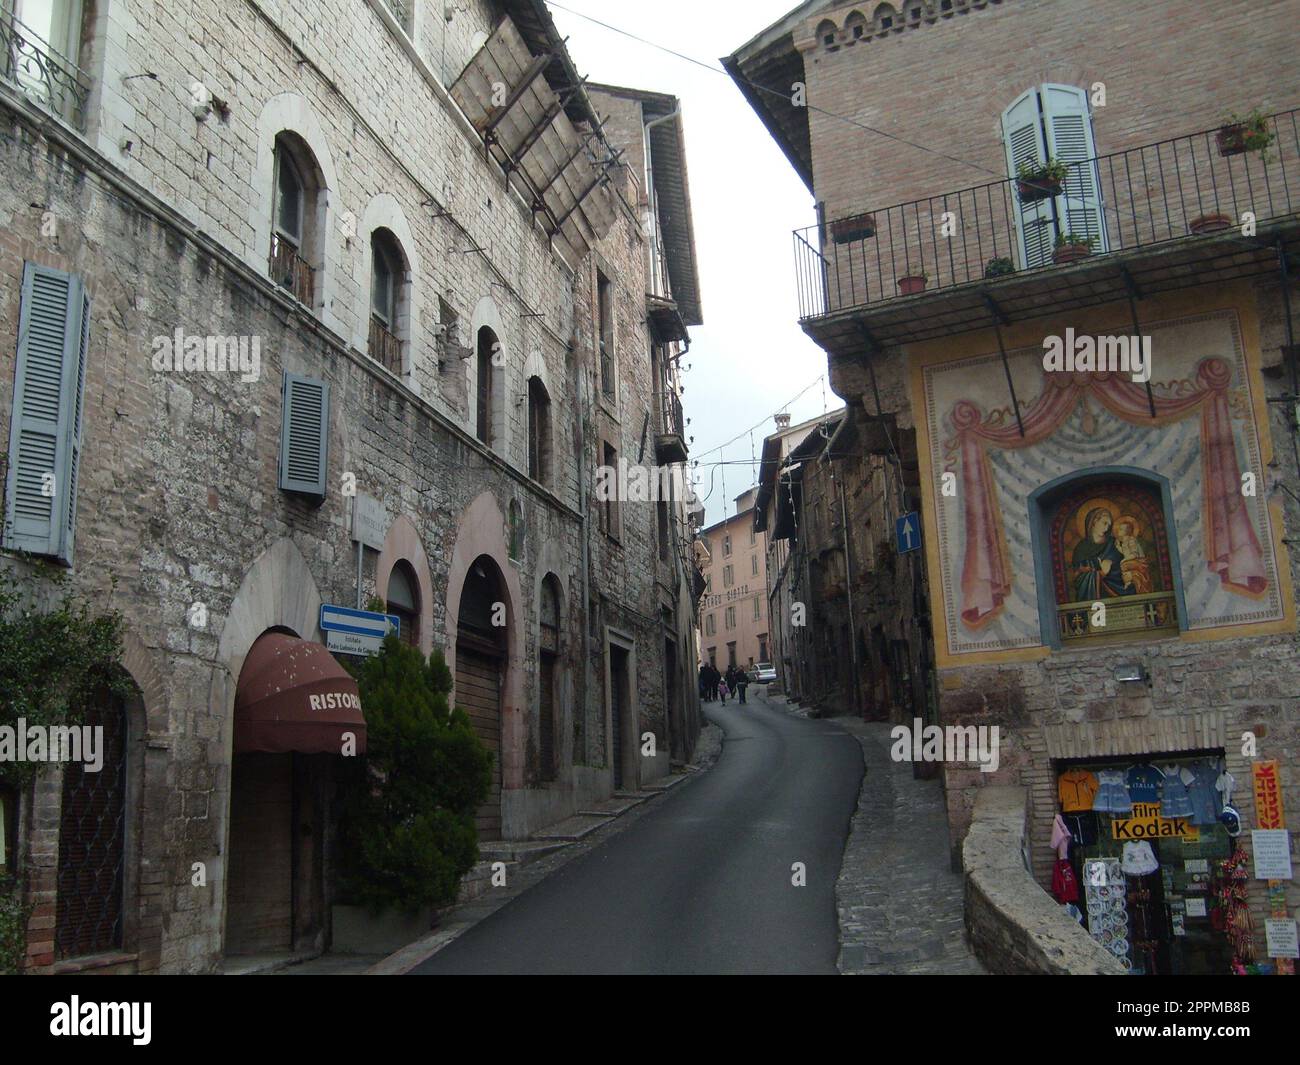 Assisi, Italien, 10. Dezember 2020. Straßen von Assisi, entlang derer eine Gruppe von Touristen zu Fuß geht. Alte Gebäude, nahe beieinander. Leute auf Ausflügen. Enge Straße Stockfoto